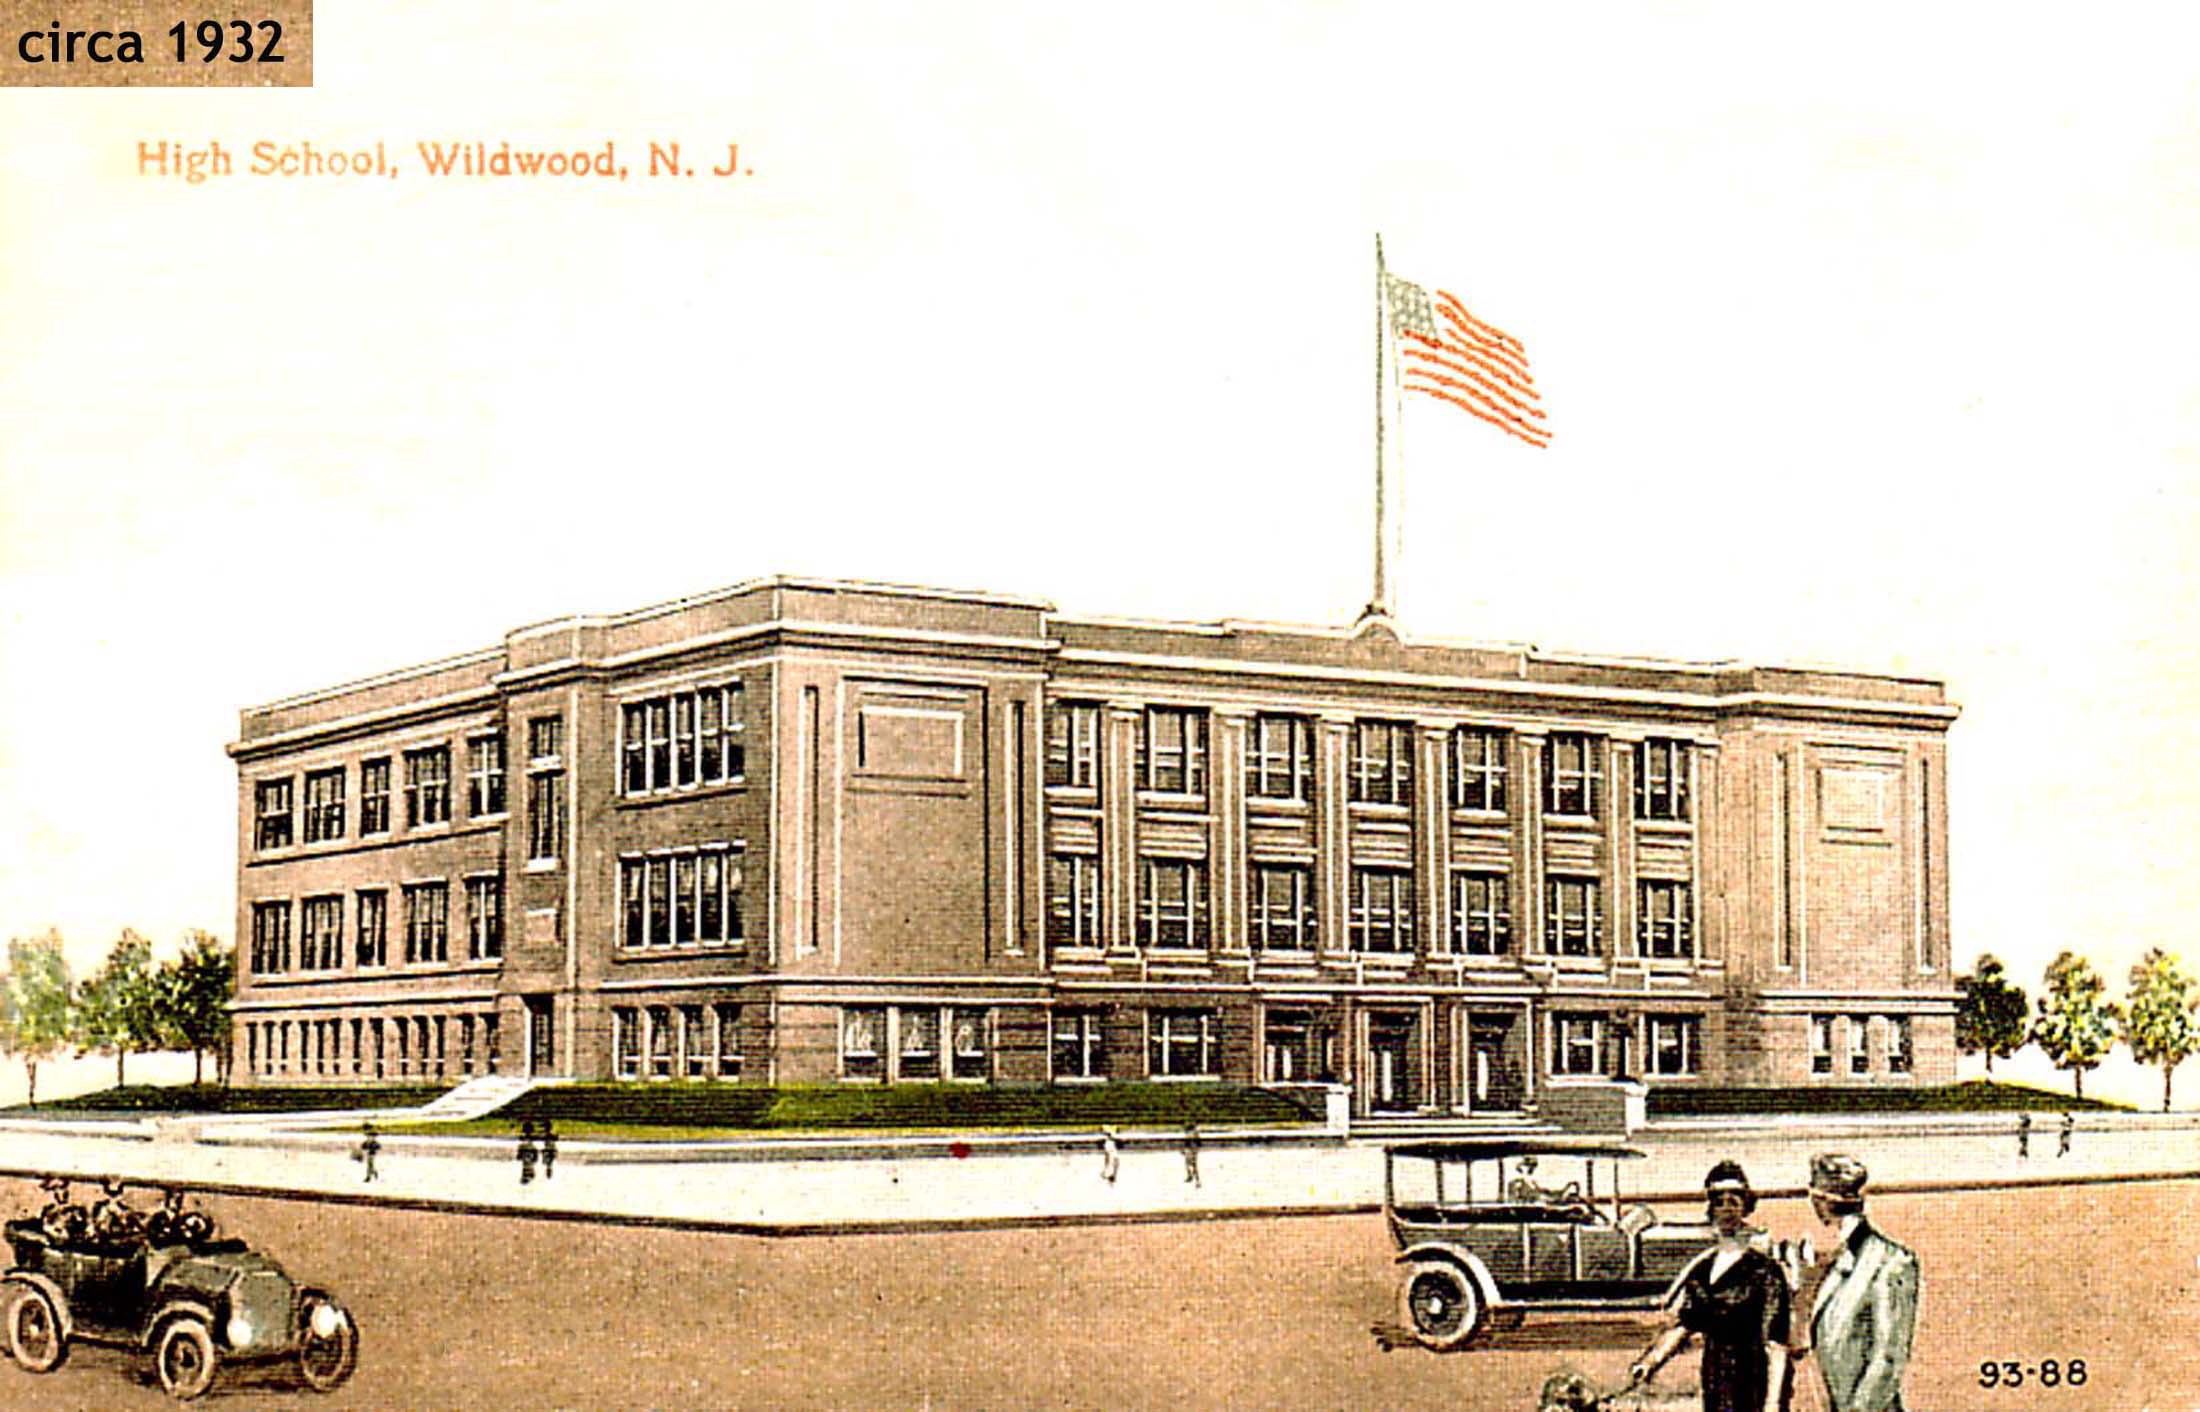 Wildwood High-circa 1932-date